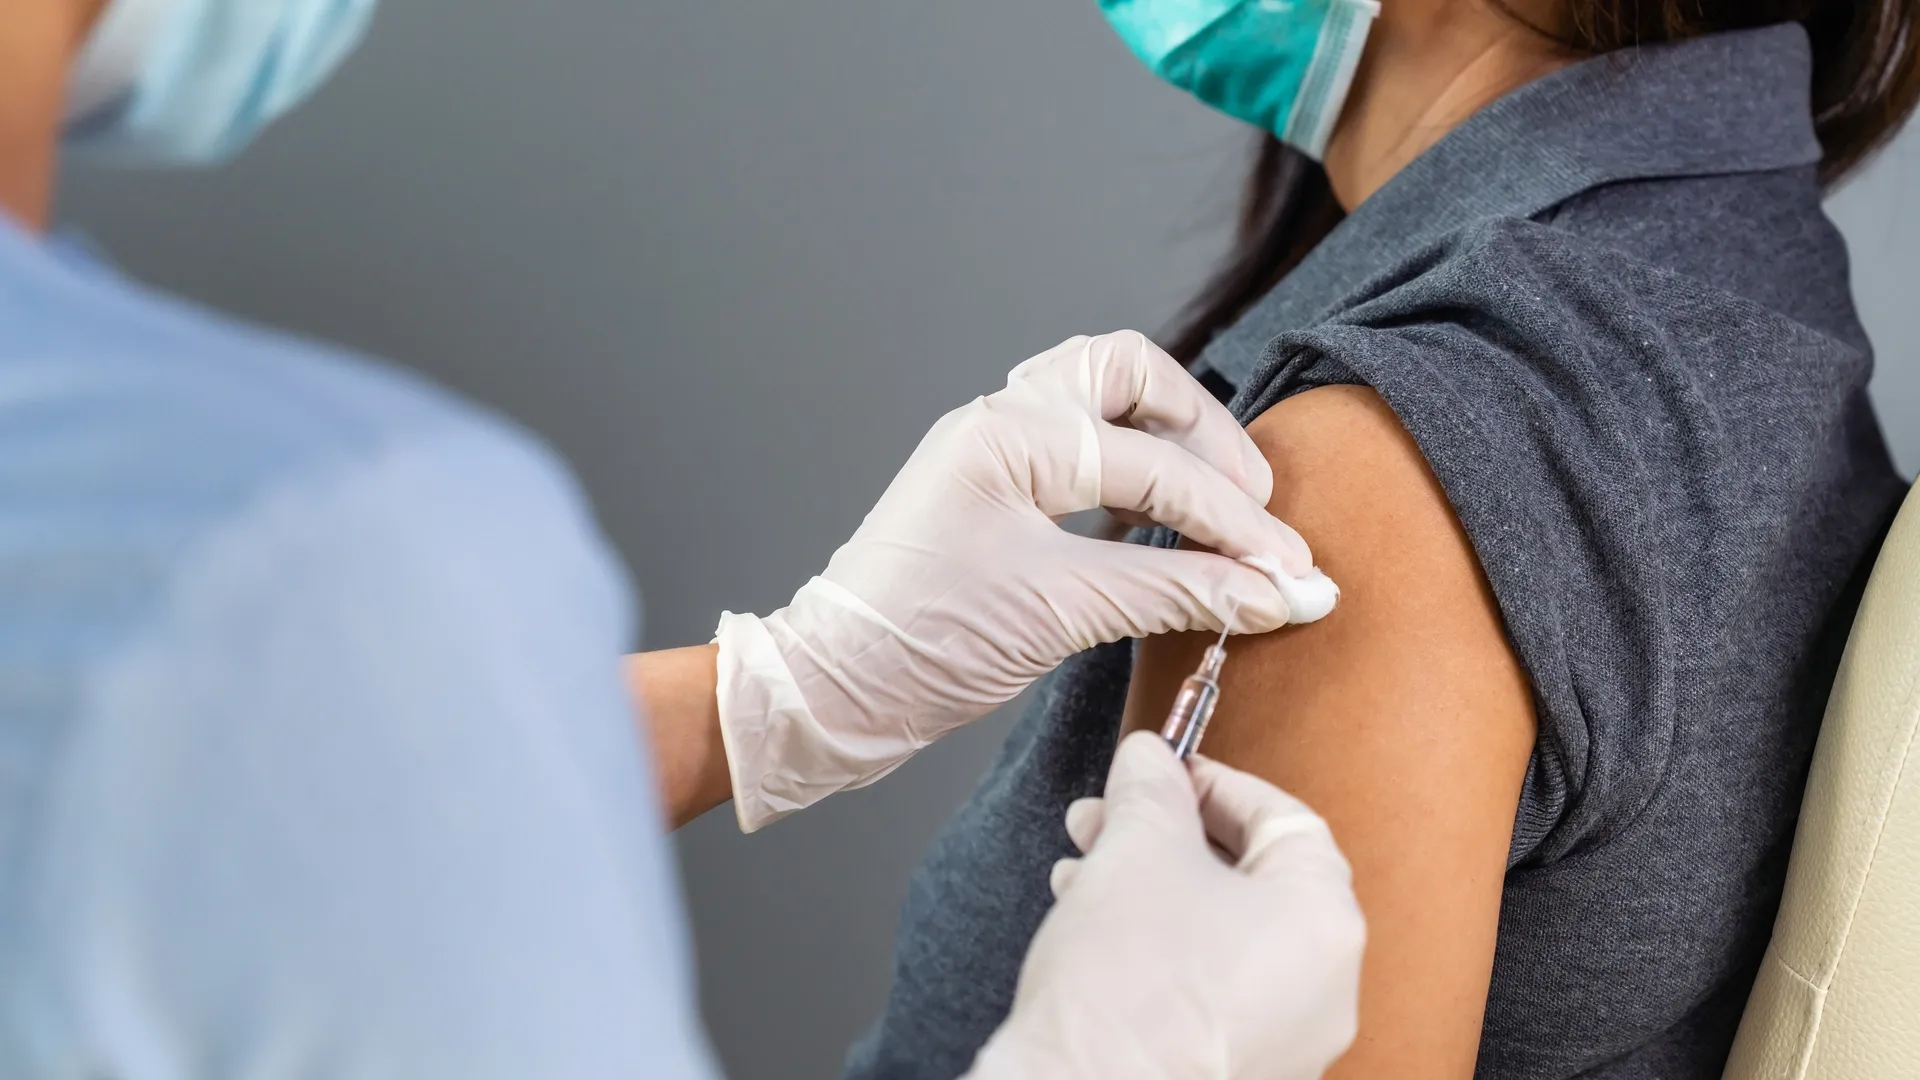 Врачи призывают вакцинироваться уже сейчас. Фото: BaLL LunLa / Shutterstock.com